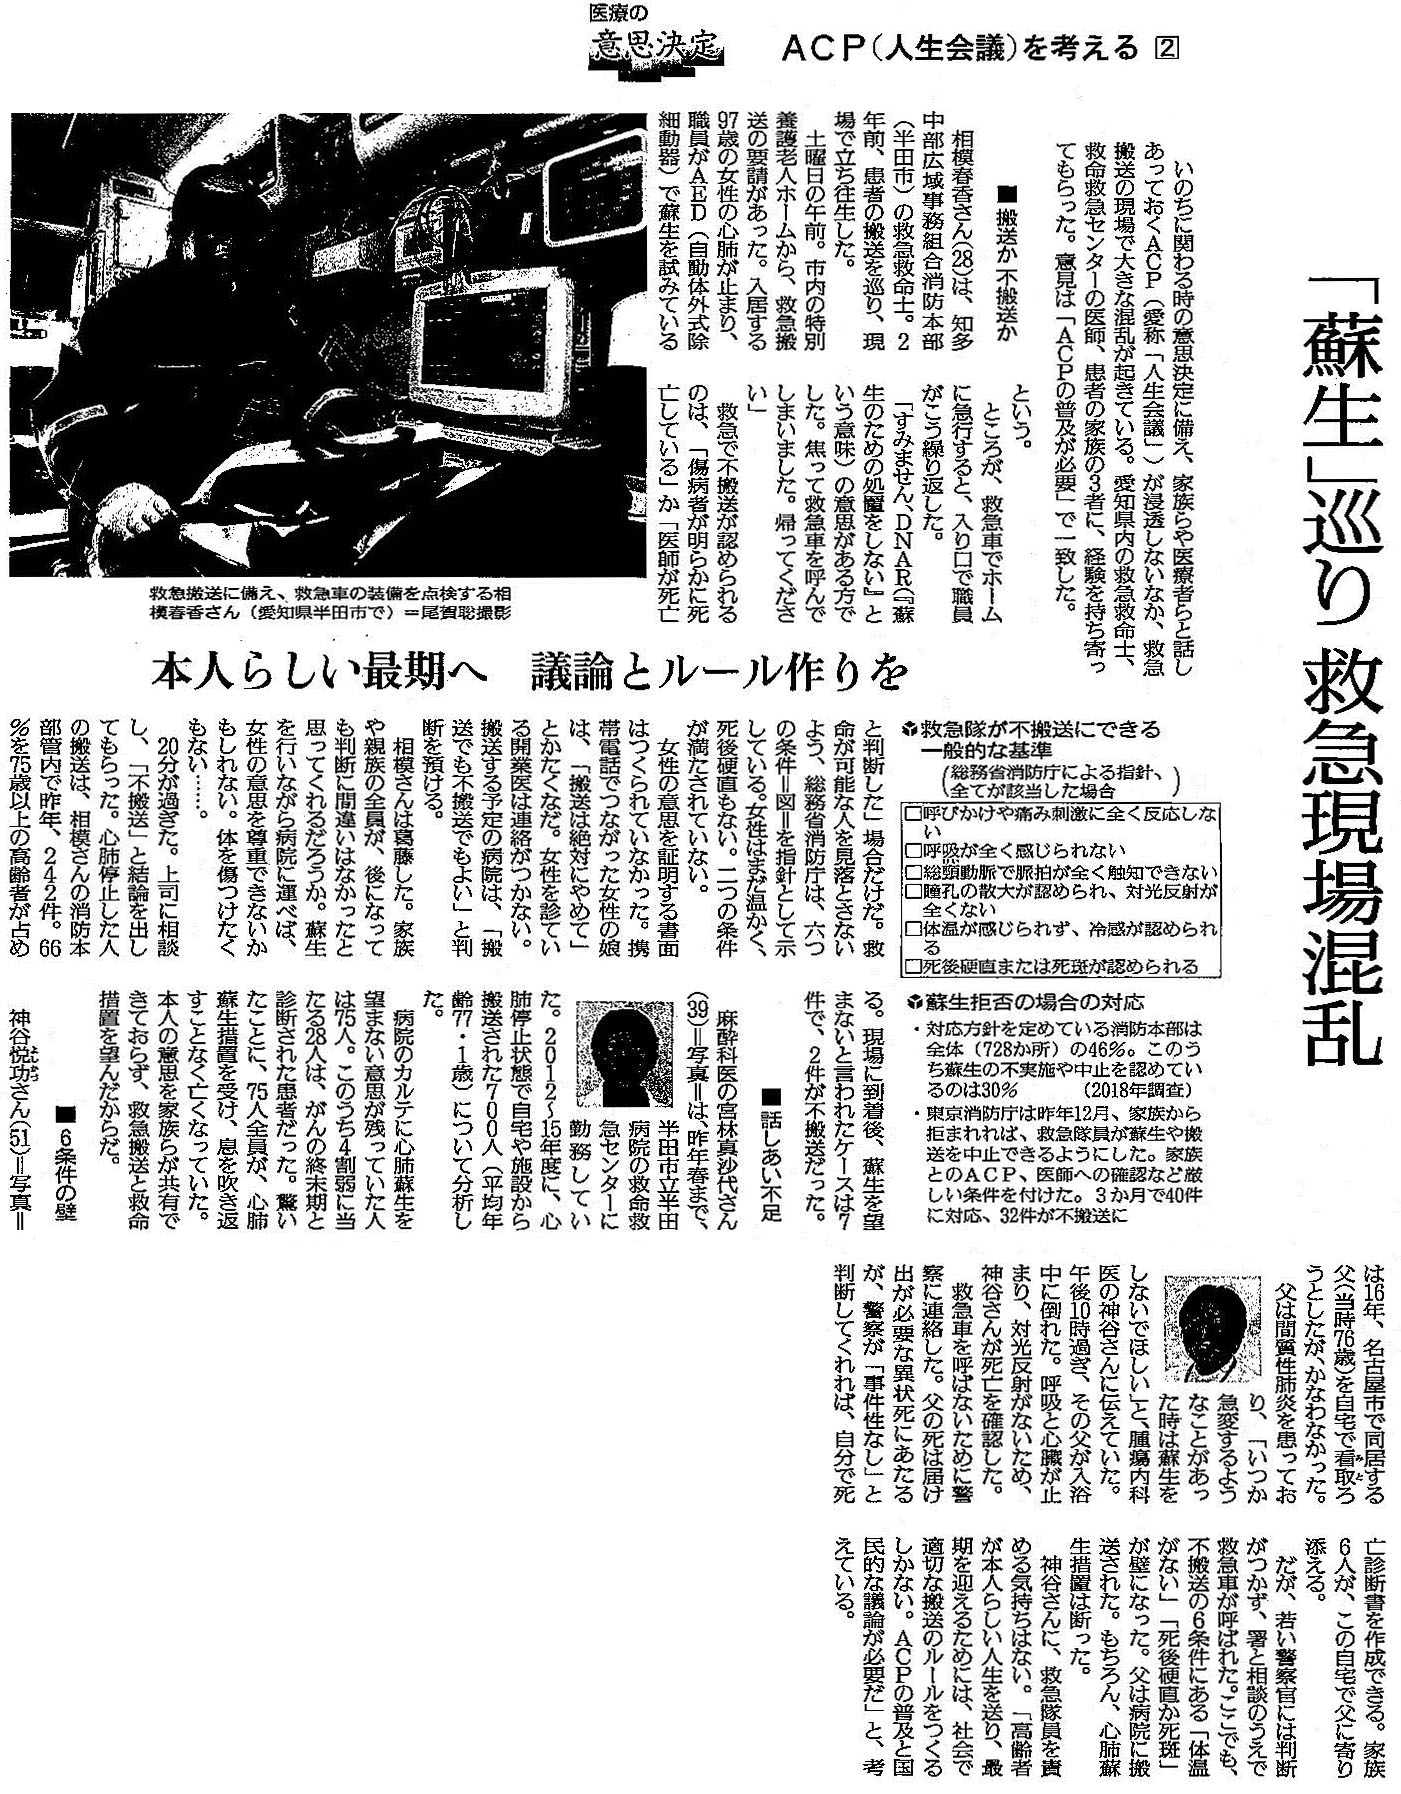 読売新聞 2020年4月21日掲載記事